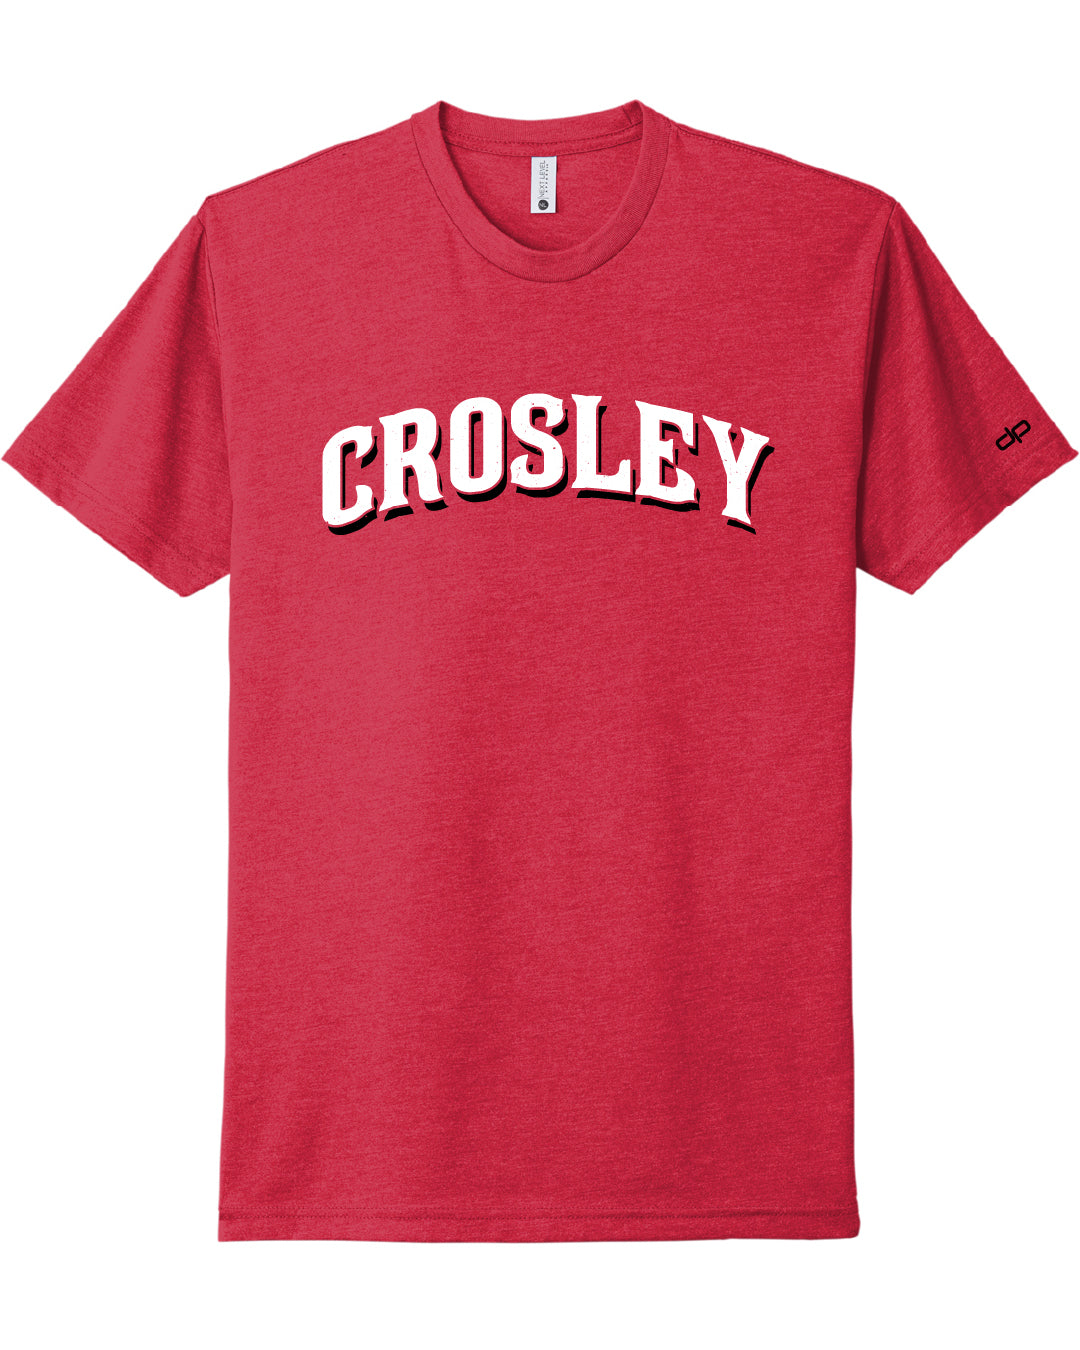 Crosley Field T-Shirt